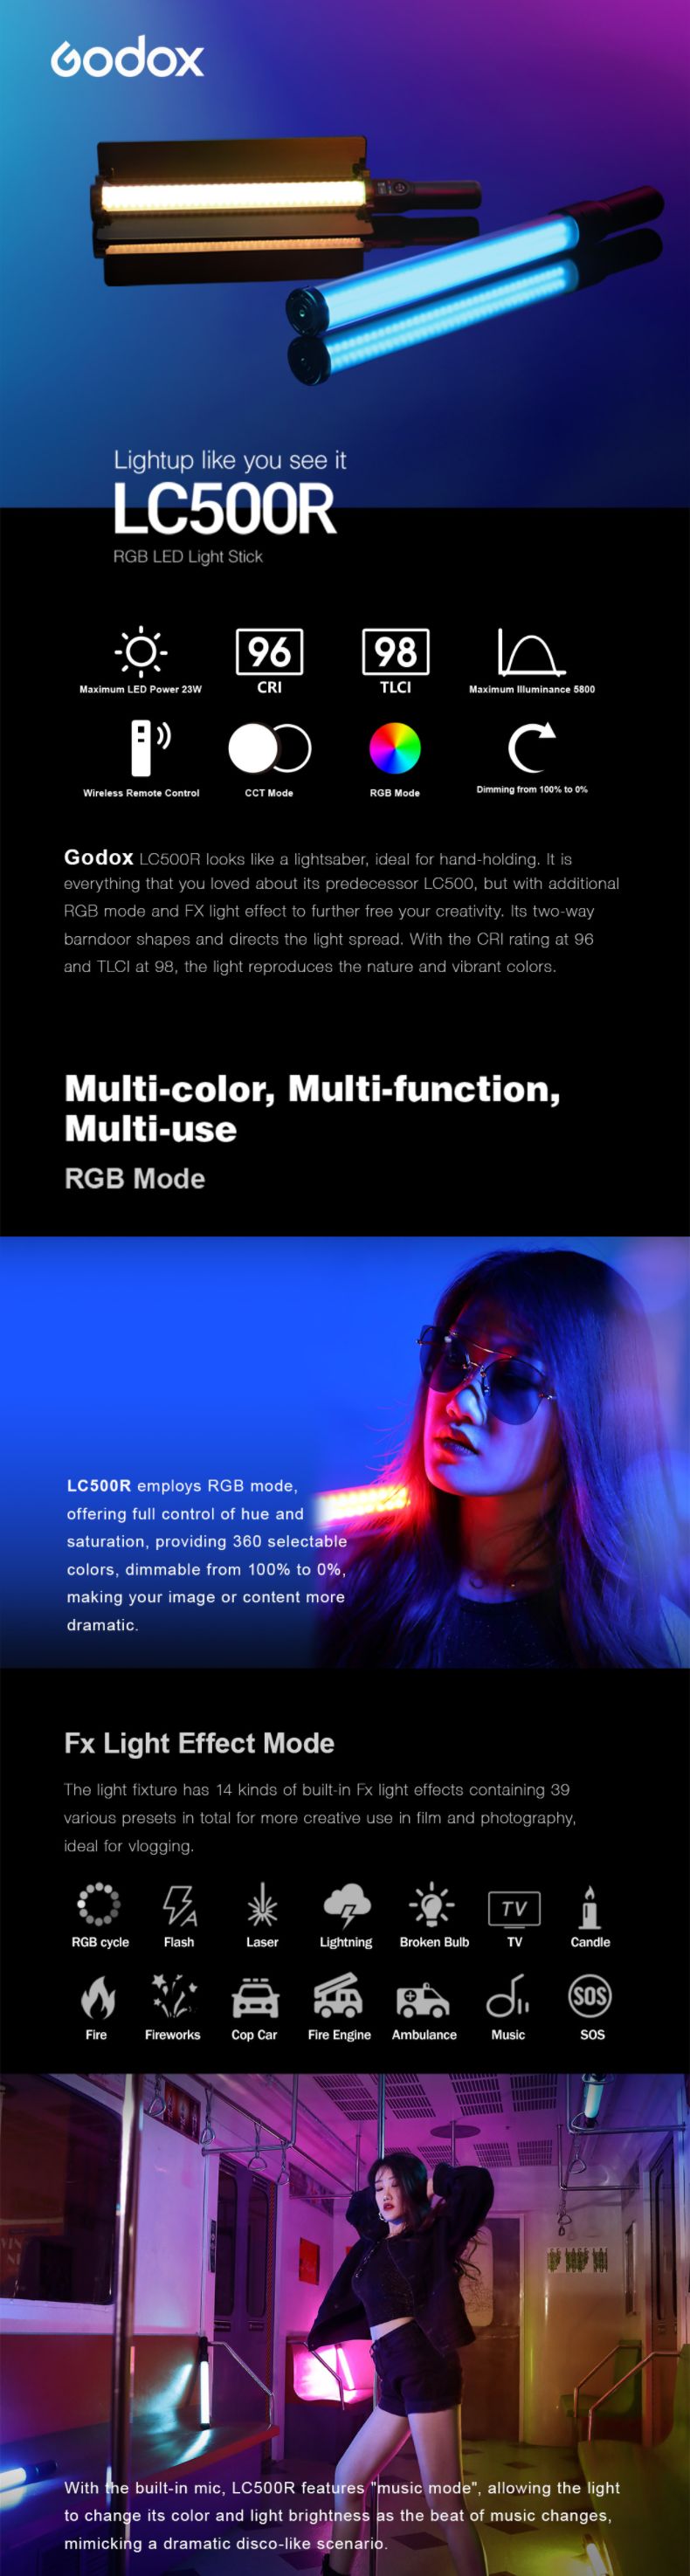 Godox LC500R Light Stick Multi-color Multi-funcition Multi-use